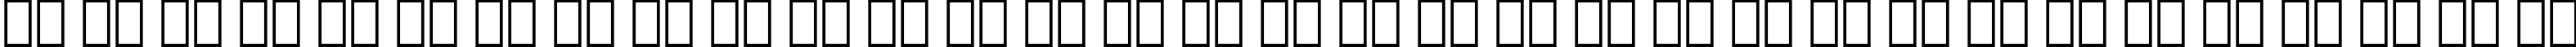 Пример написания русского алфавита шрифтом Allegro BT